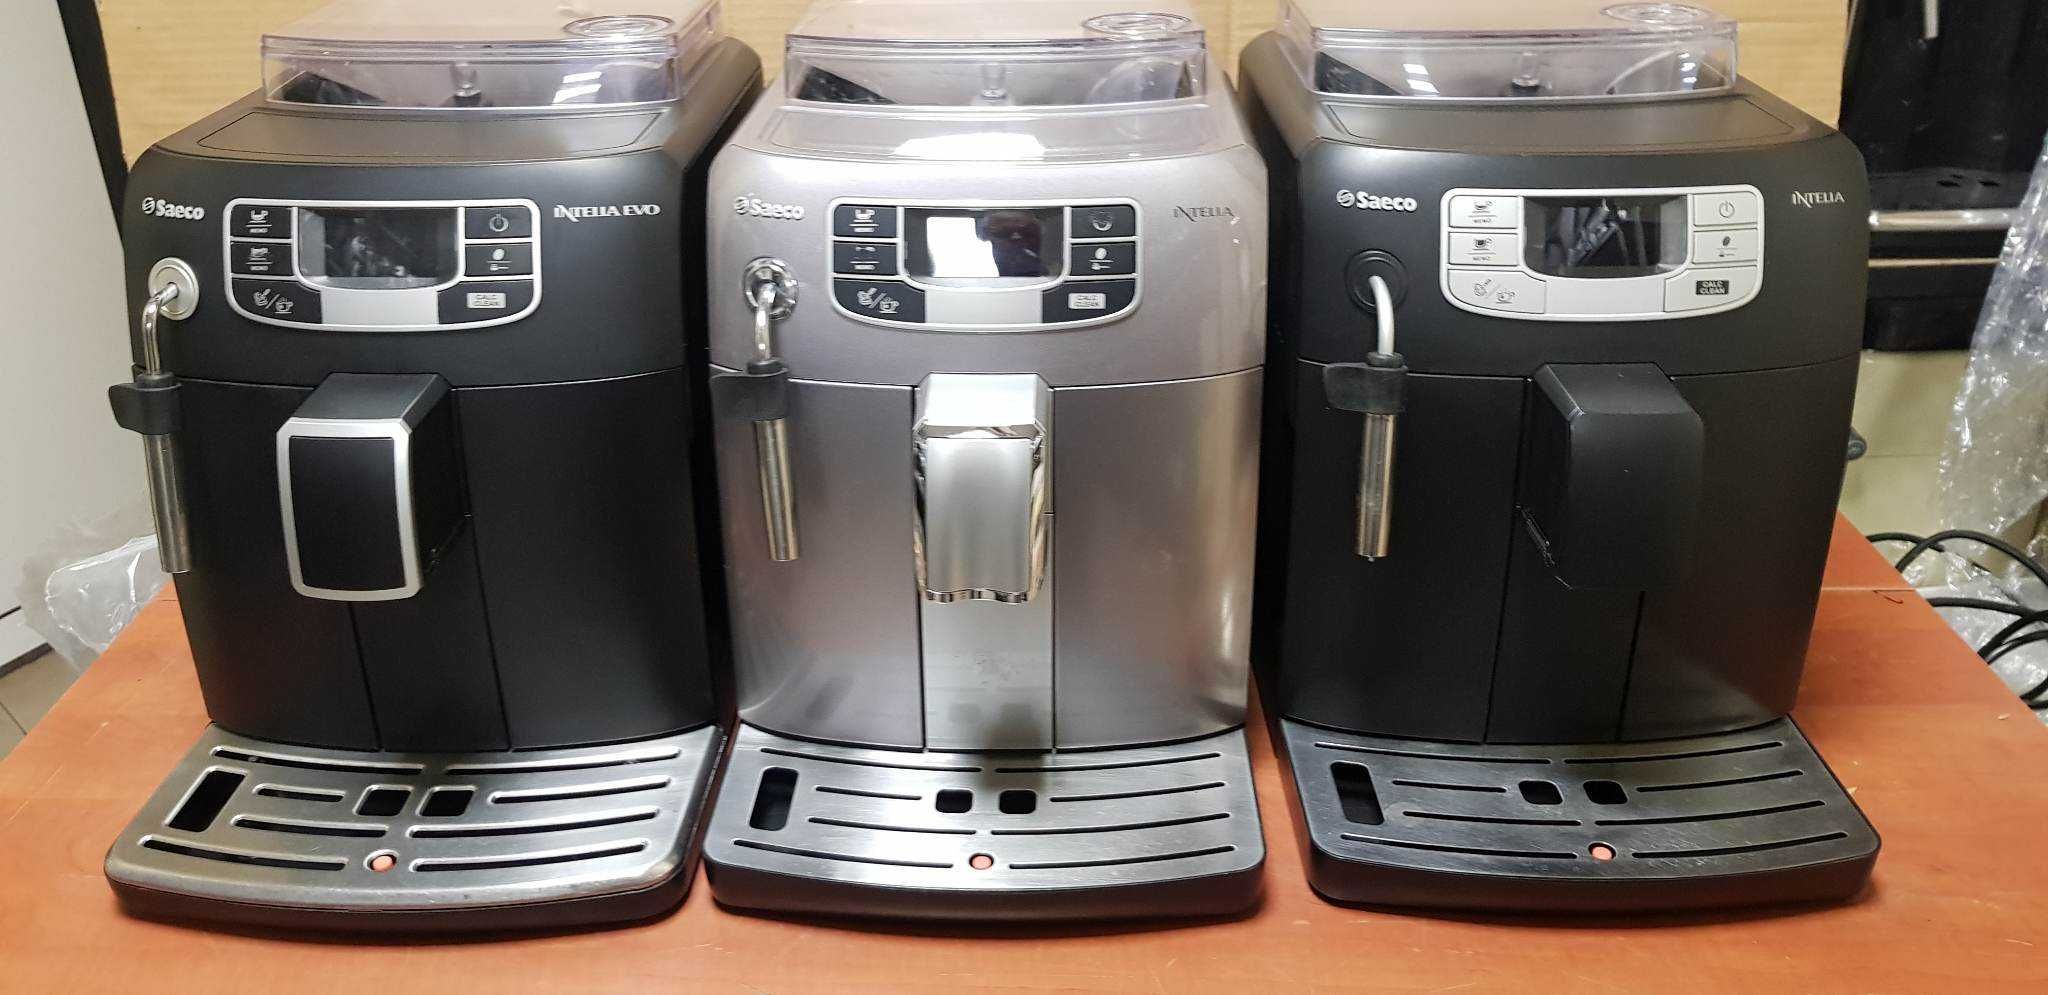 Кафе машина Саеко Интелия